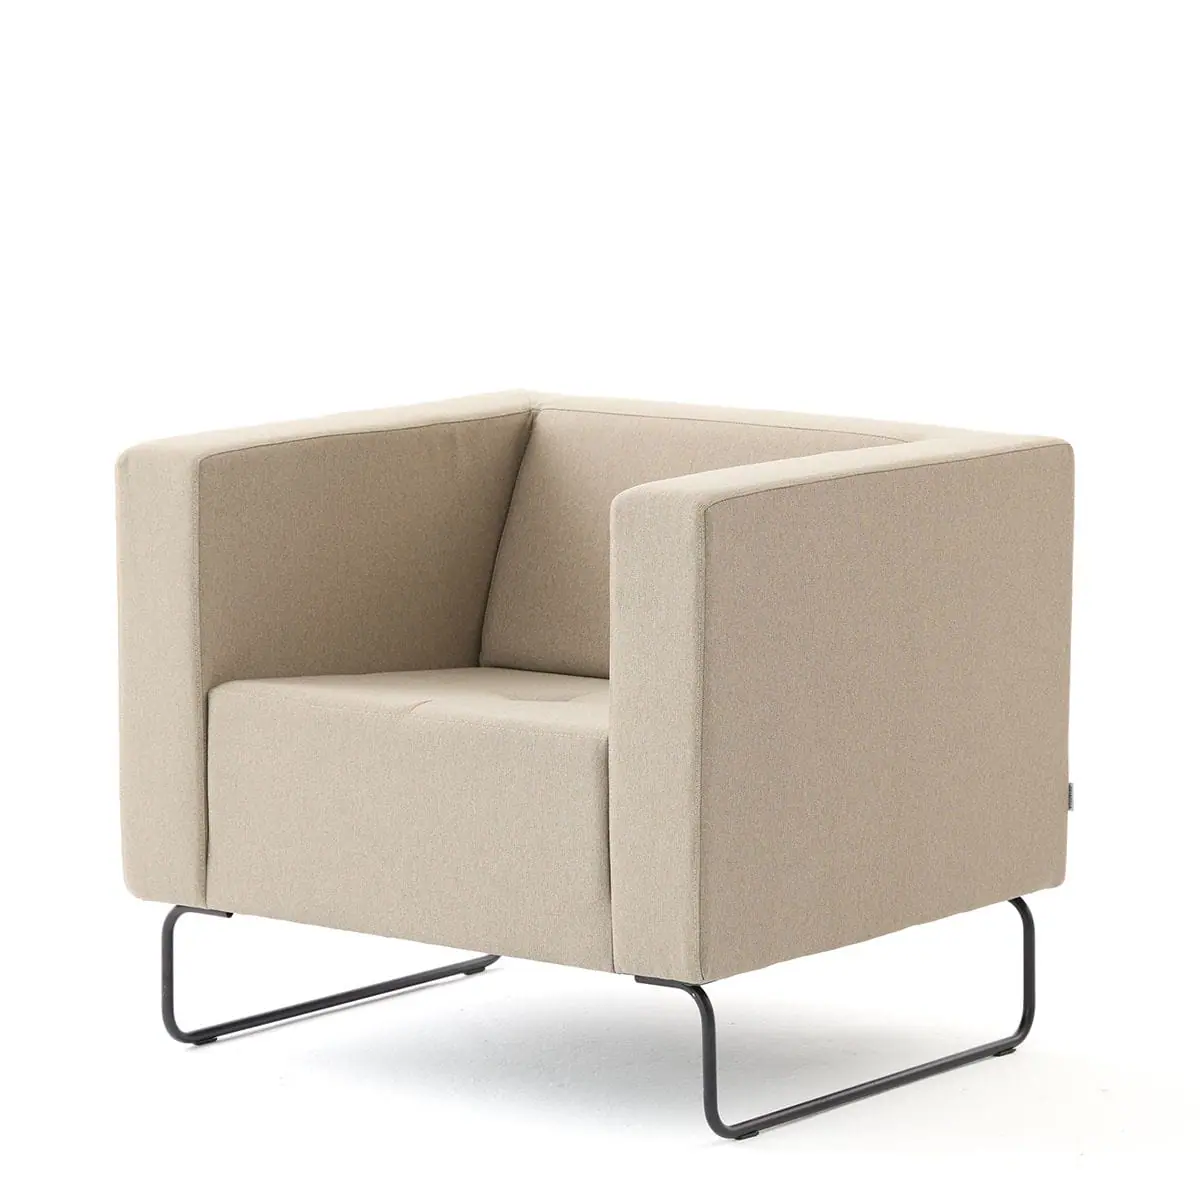 delaoliva-etna-soft-lounge-seating-004